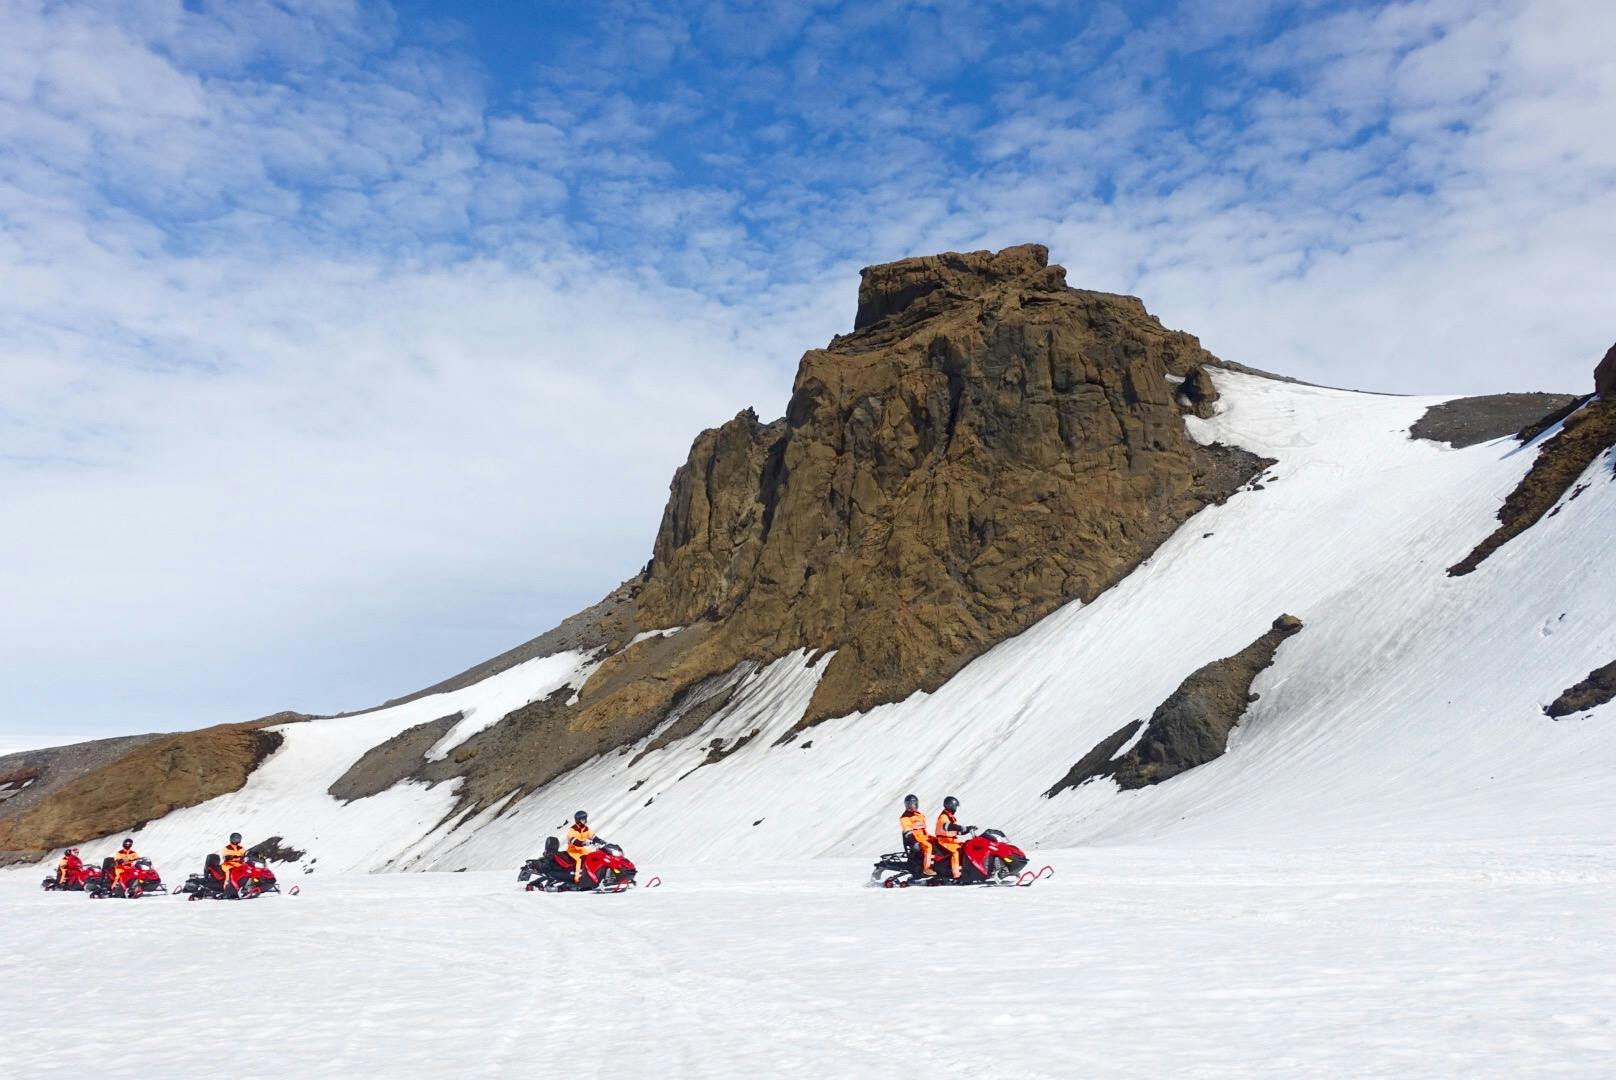 ในการผจญภัยช่วงฤดูหนาว 4 วันนี้ คุณจะได้ขับรถเลื่อนหิมะข้ามธารน้ำแข็งที่ใหญ่ที่สุดเป็นอันดับสองของประเทศไอซ์แลนด์ที่ชื่อว่า ลางโจกุล.